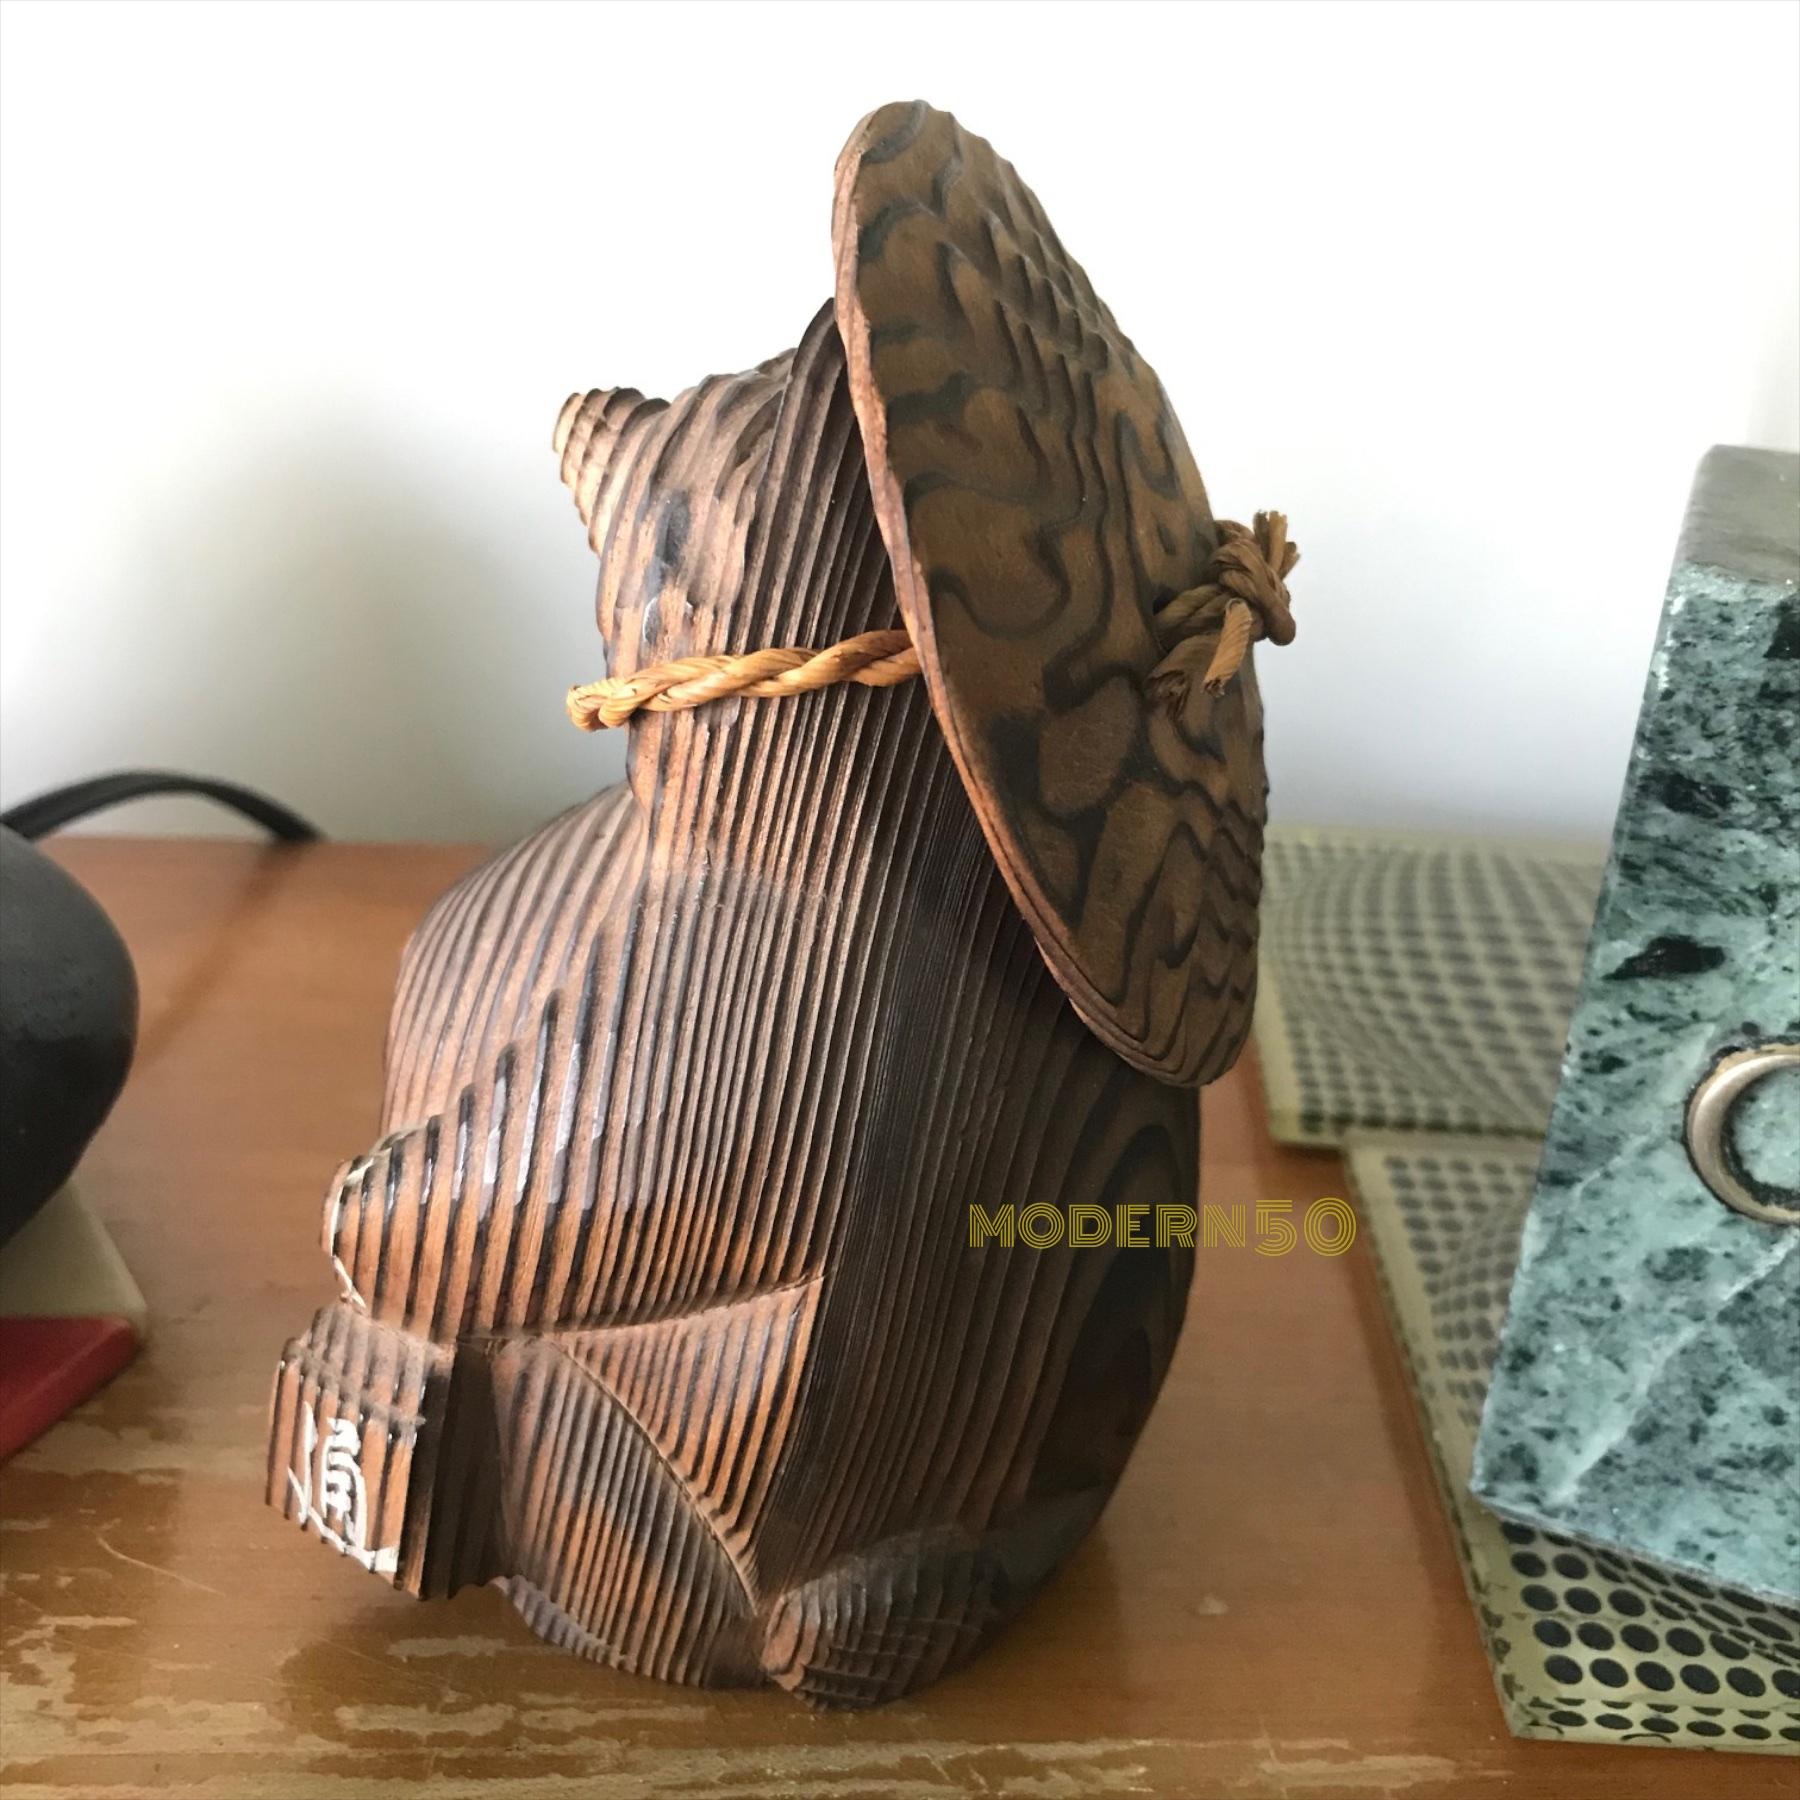 Shou-sugi-ban Japanischer Marderhund Skulptur Spielzeug Vintage Mid-Century Modern (Holz)